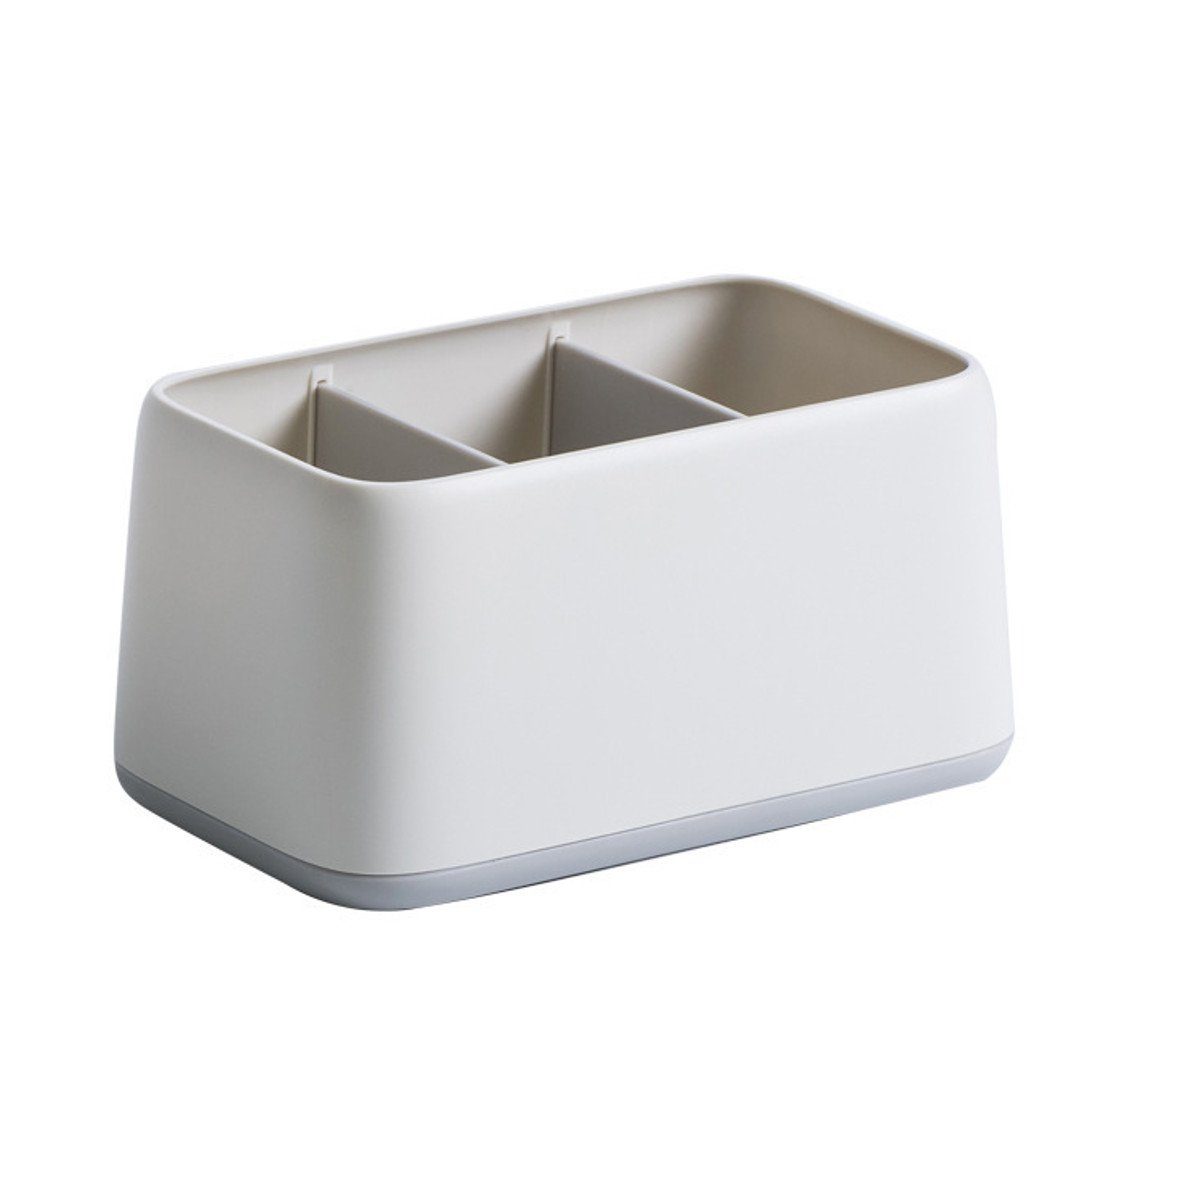 Weiß (1 3 Insma Organizer Ablagen Tisch St), Aufbewahrung Kiste Organizer Box